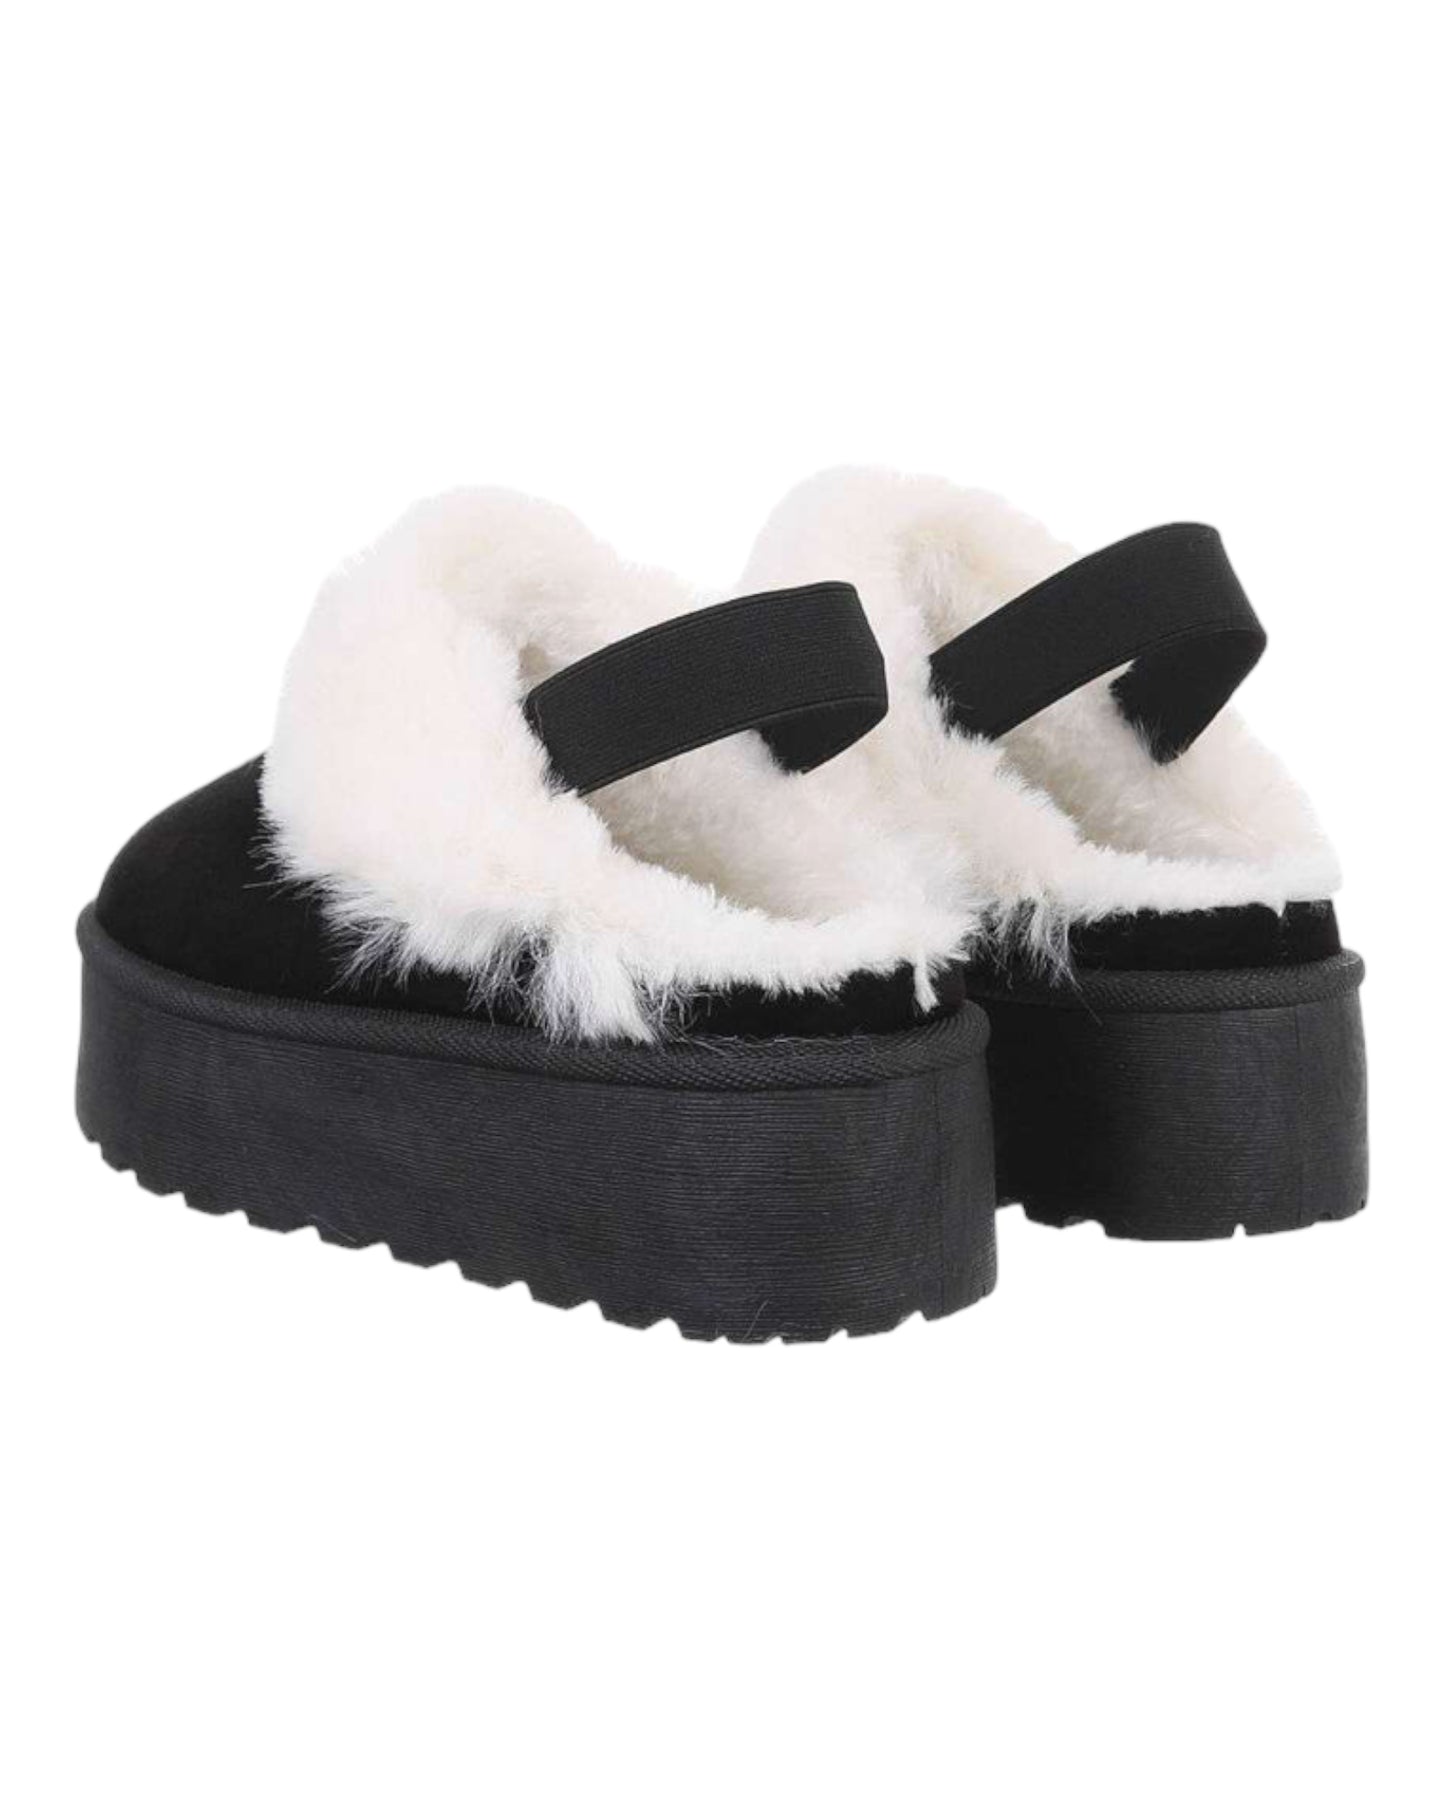 Chaussures Noir avec fausses fourrures Blanche et à semelles compensée - NuptiaLove